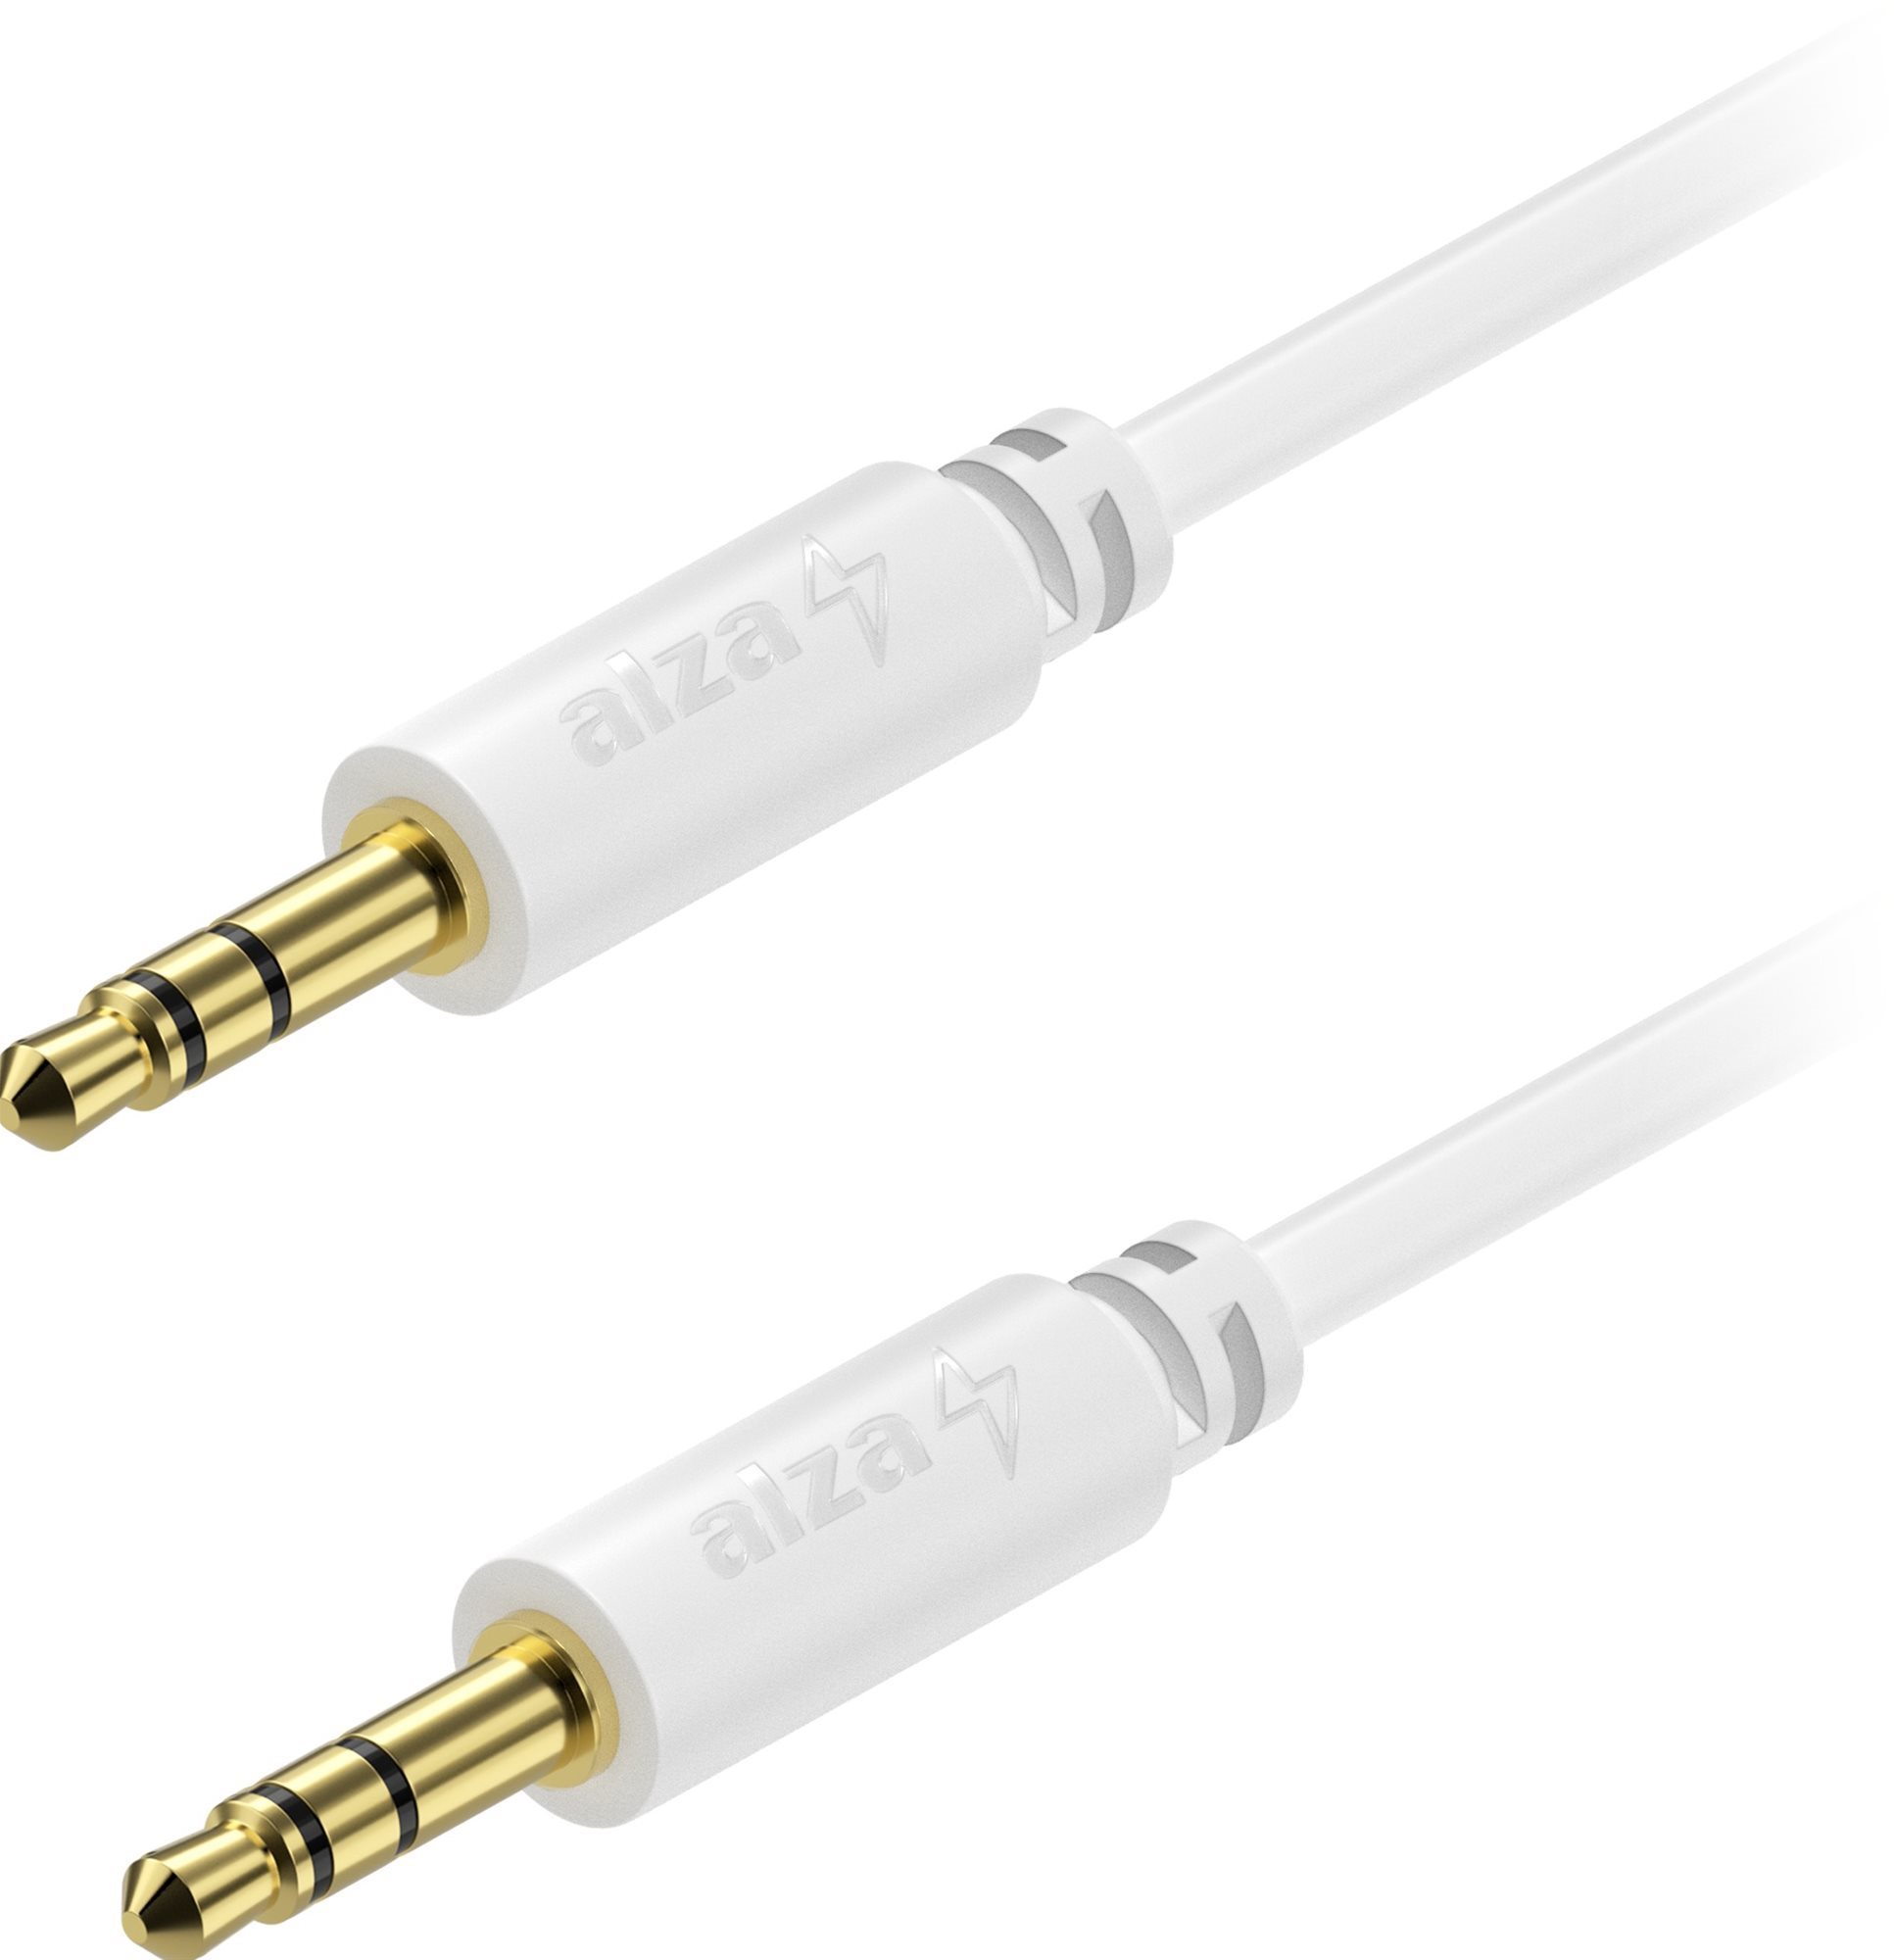 AlzaPower Core Audio 3,5 mm Jack (M) to 3,5 mm Jack (M) 2 m fehér